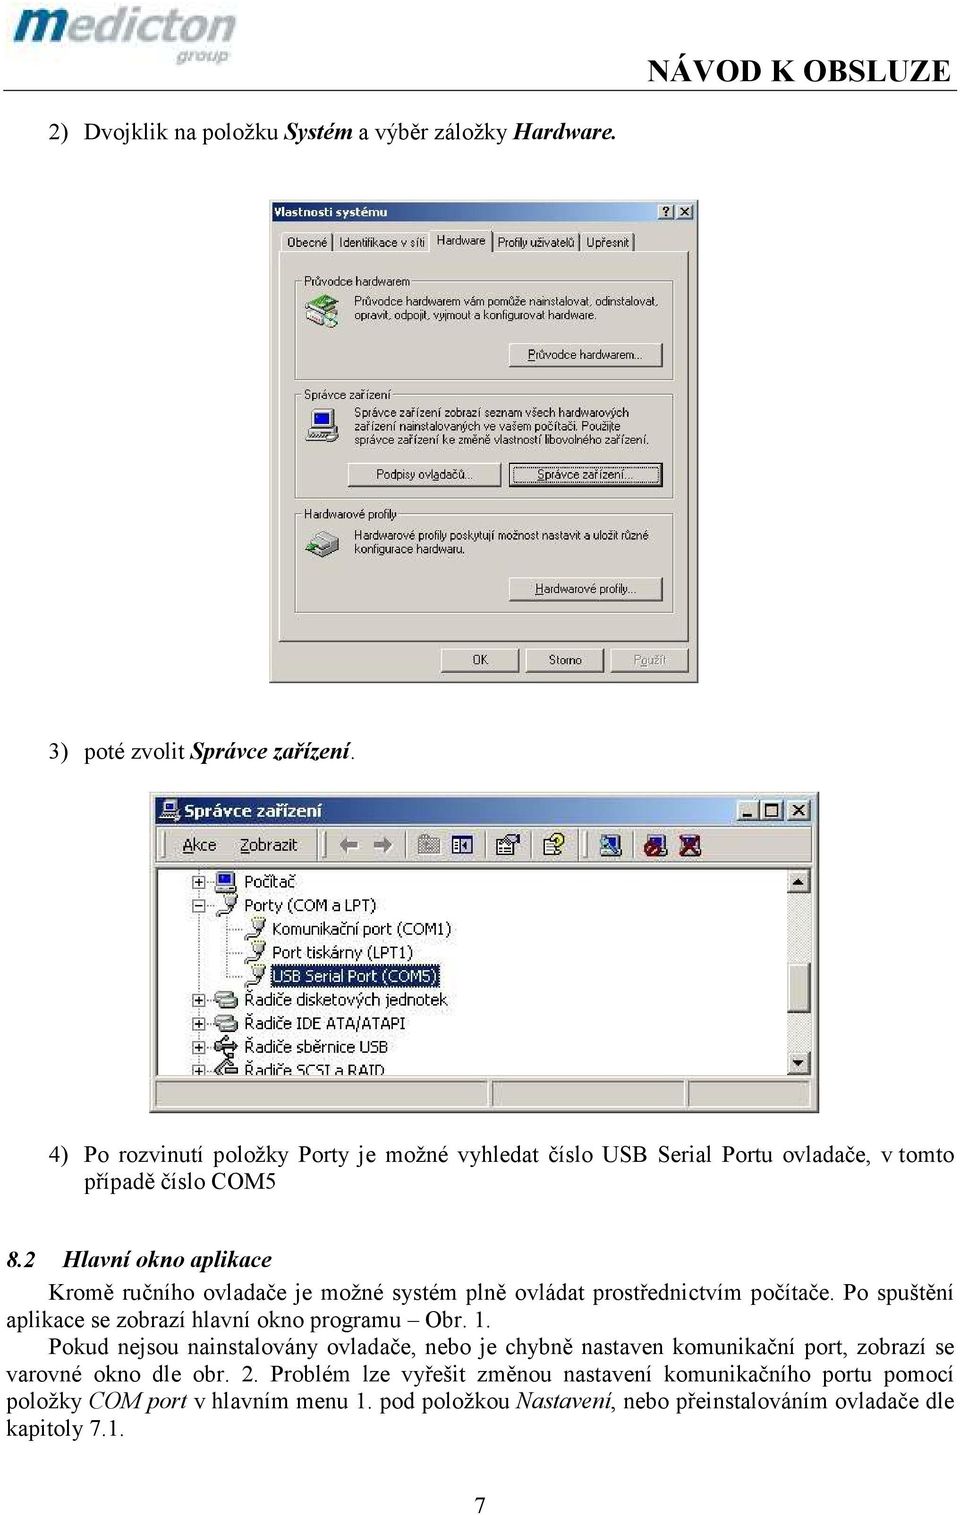 2 Hlavní okno aplikace Kromě ručního ovladače je možné systém plně ovládat prostřednictvím počítače. Po spuštění aplikace se zobrazí hlavní okno programu Obr. 1.